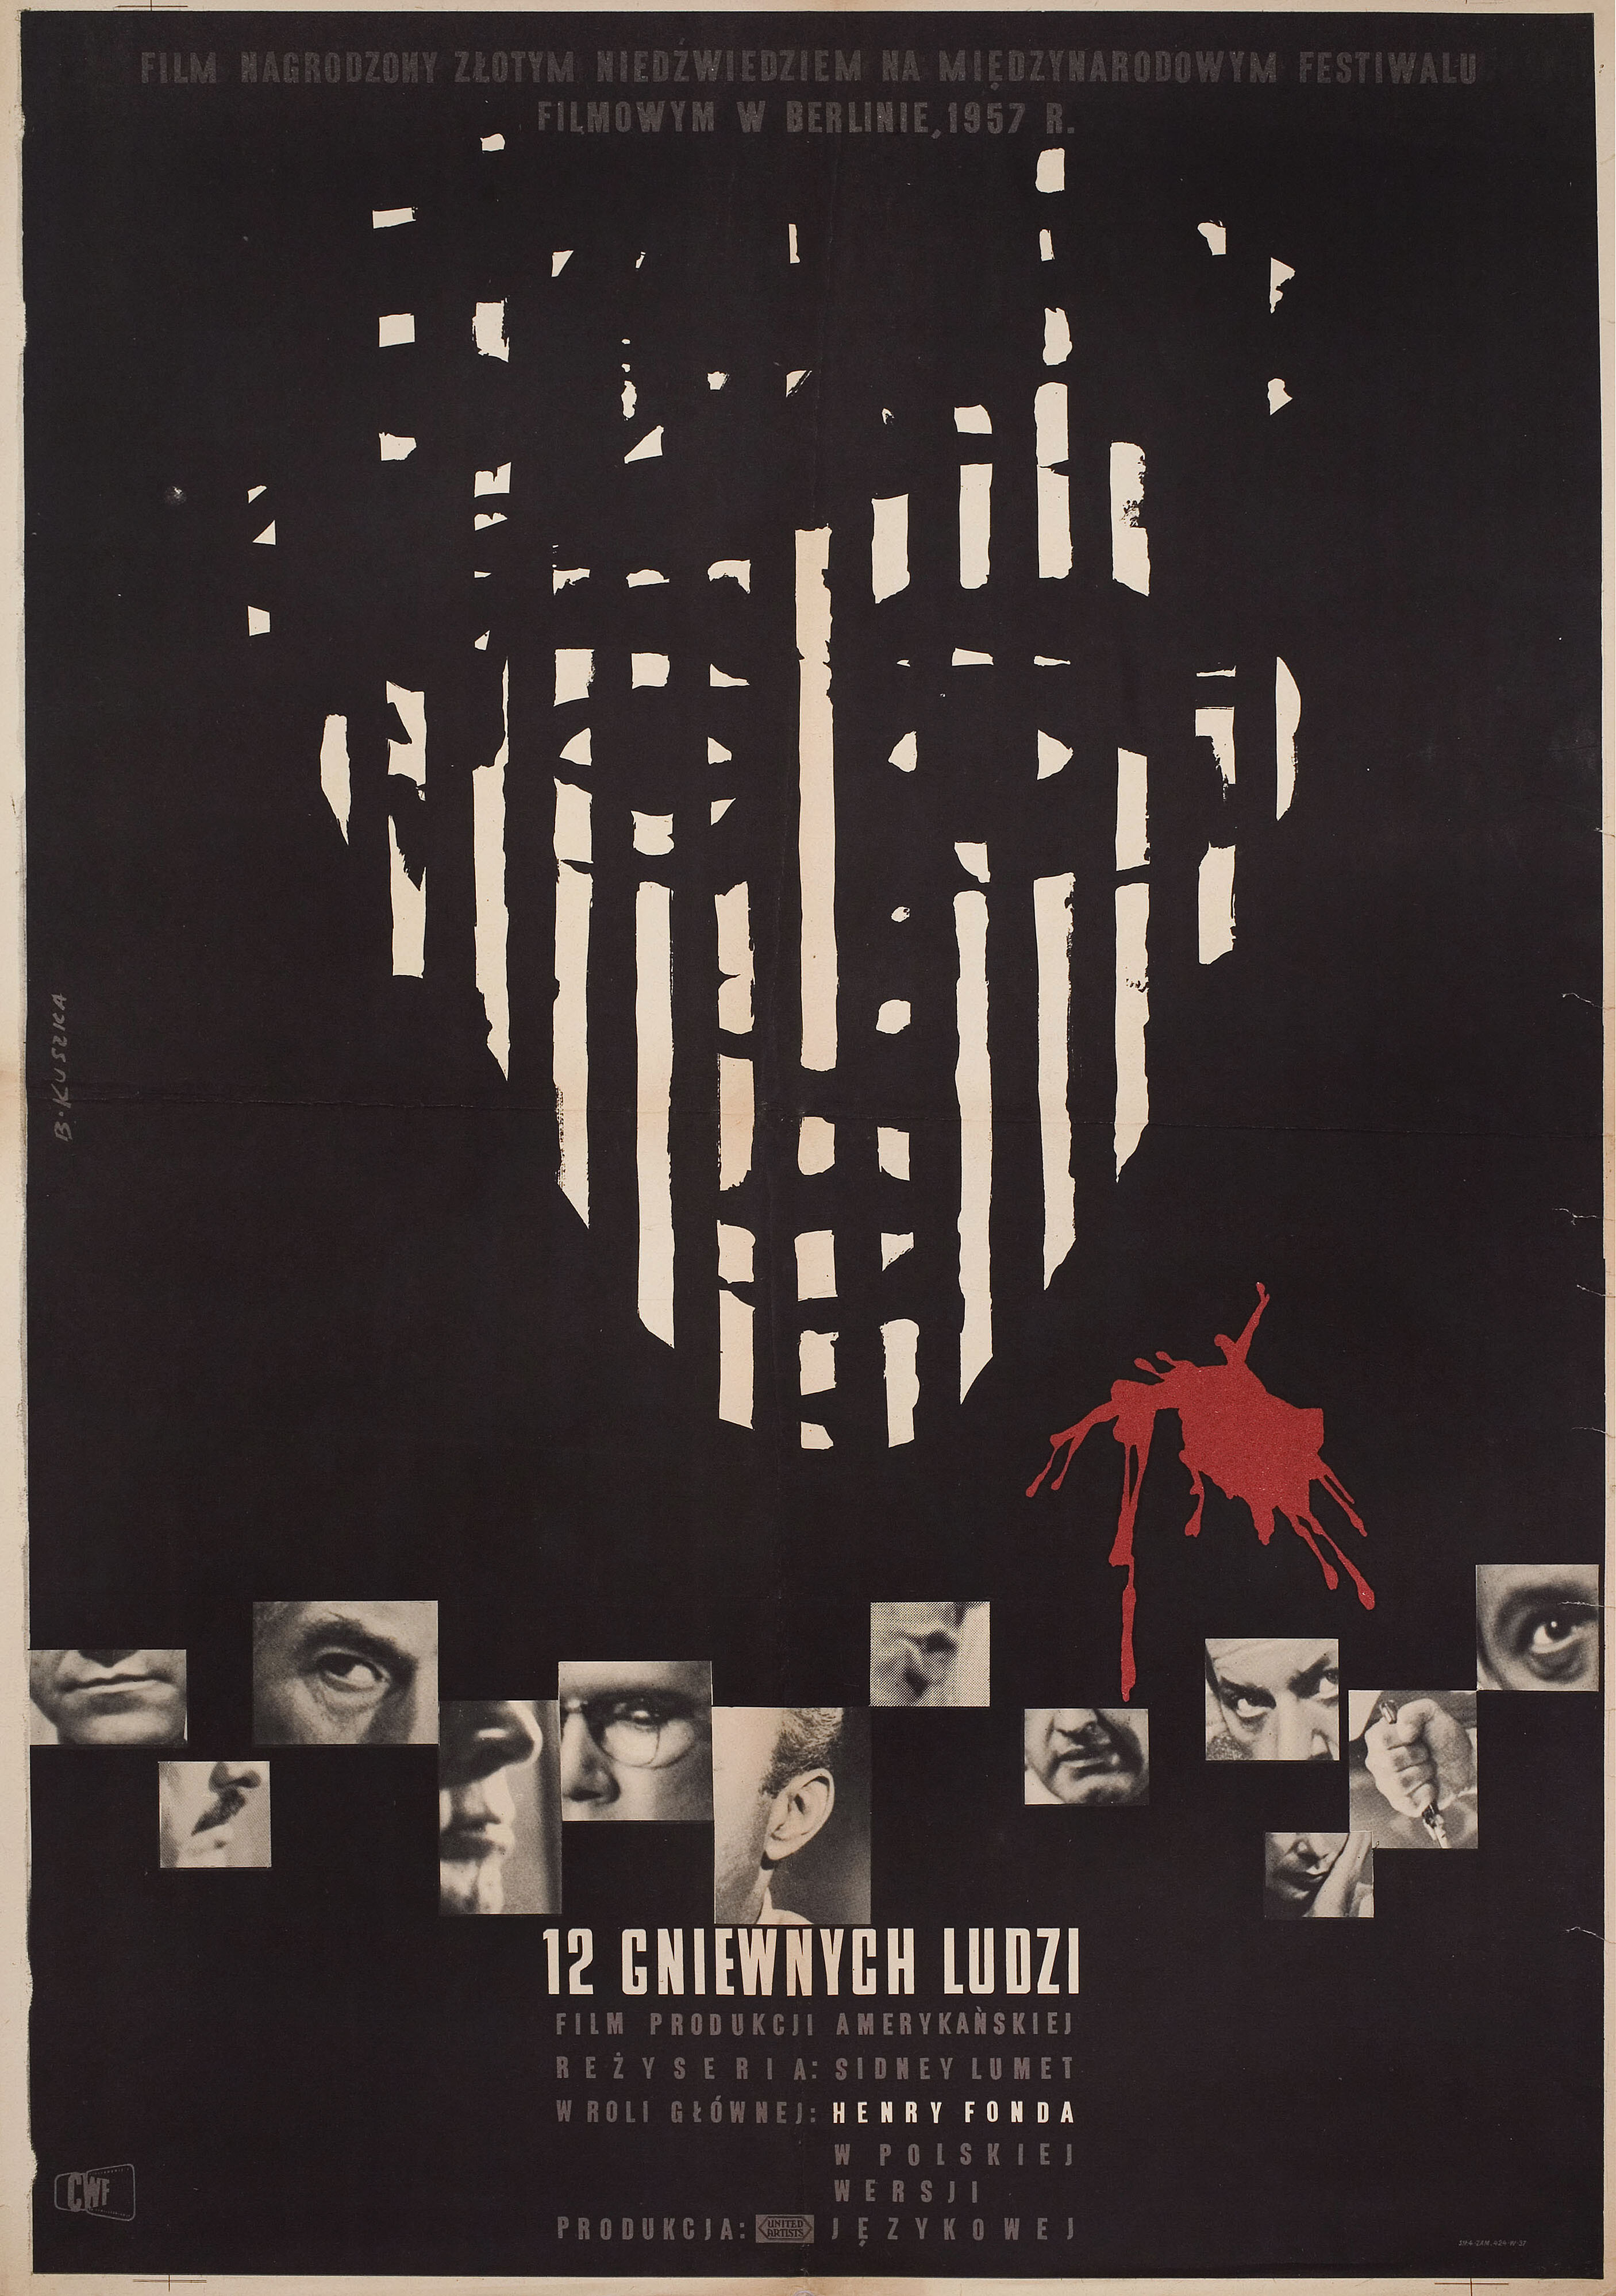 12 разгневанных мужчин (12 Angry Men, 1957), режиссёр Сидни Люмет, польский плакат к фильму, 1957 год, автор Б. Кушка